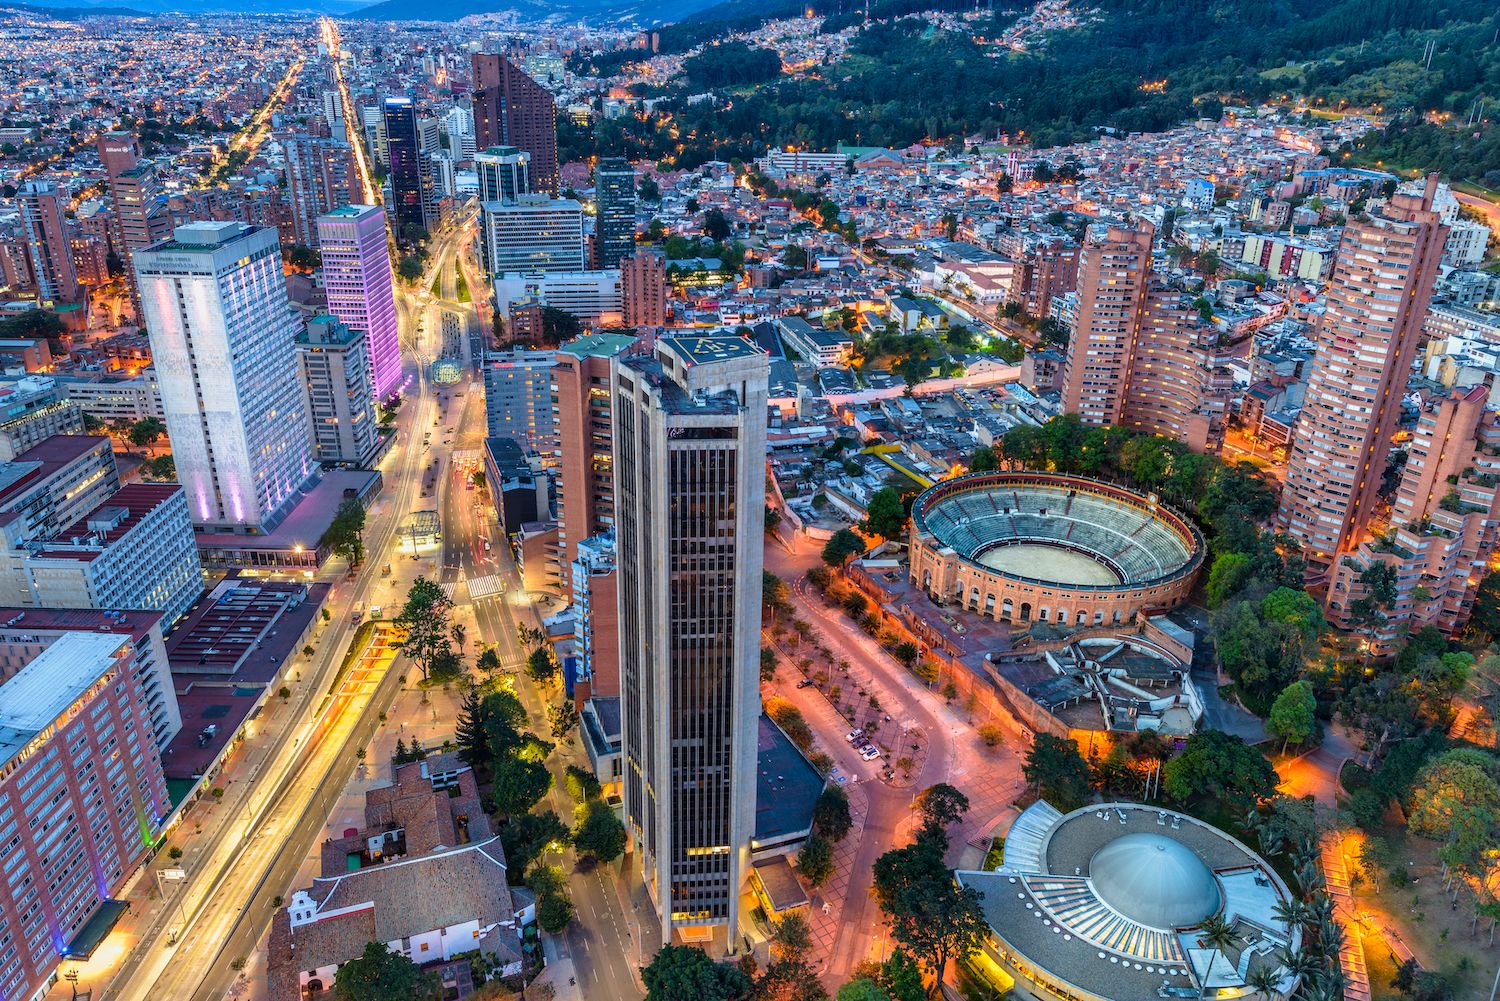 Bogota, south American dream destinations for 2023